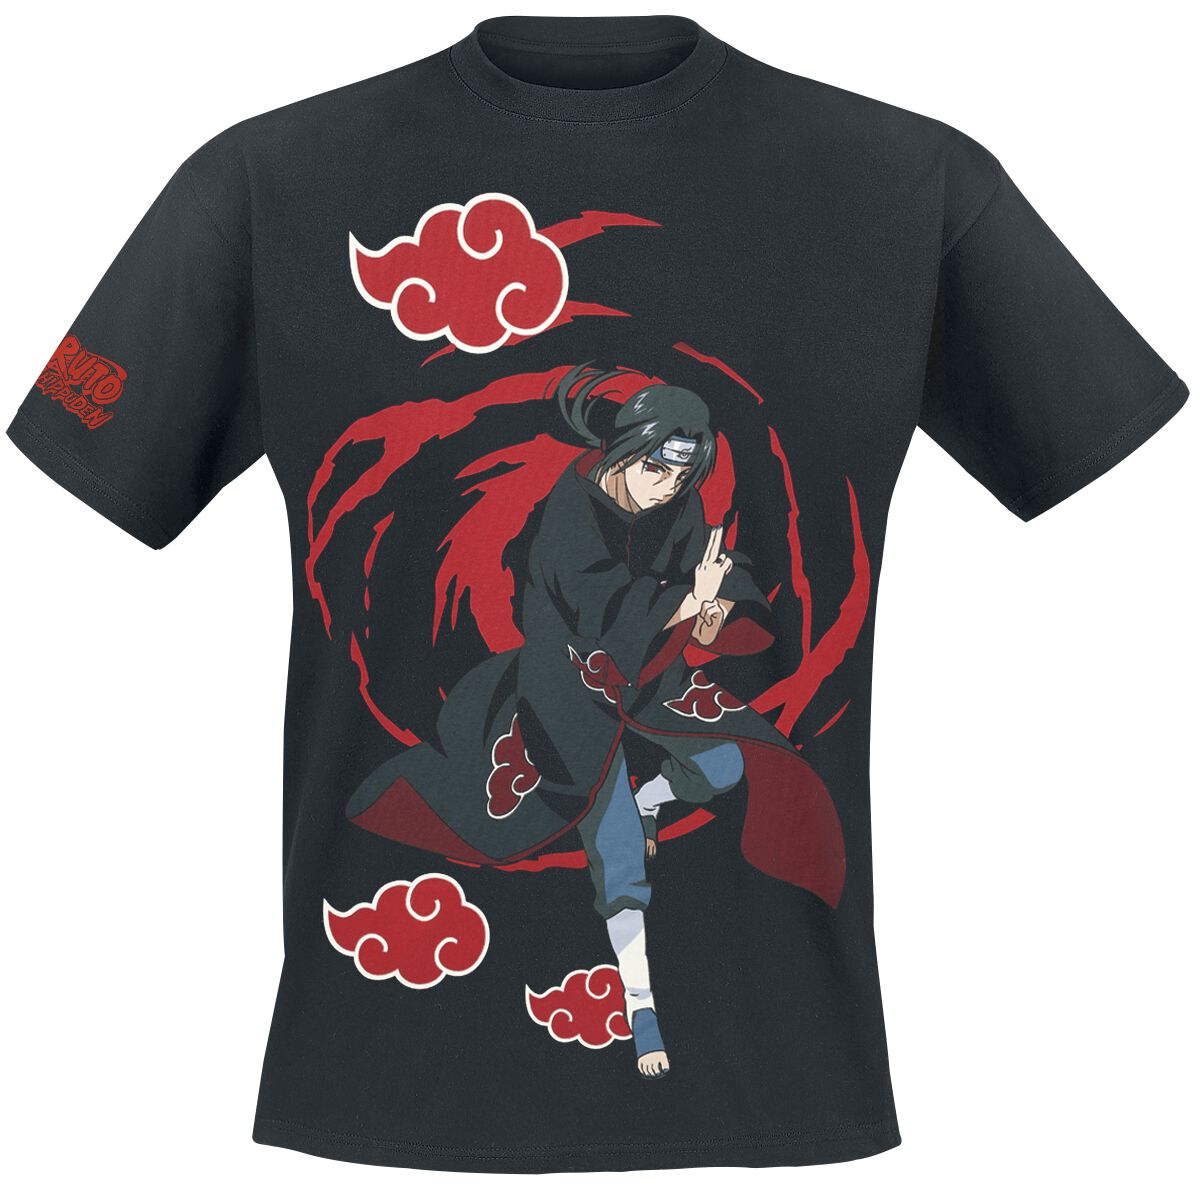 Image of T-Shirt Anime di Naruto - Itachi Uchiha - Logos - S a L - Uomo - nero